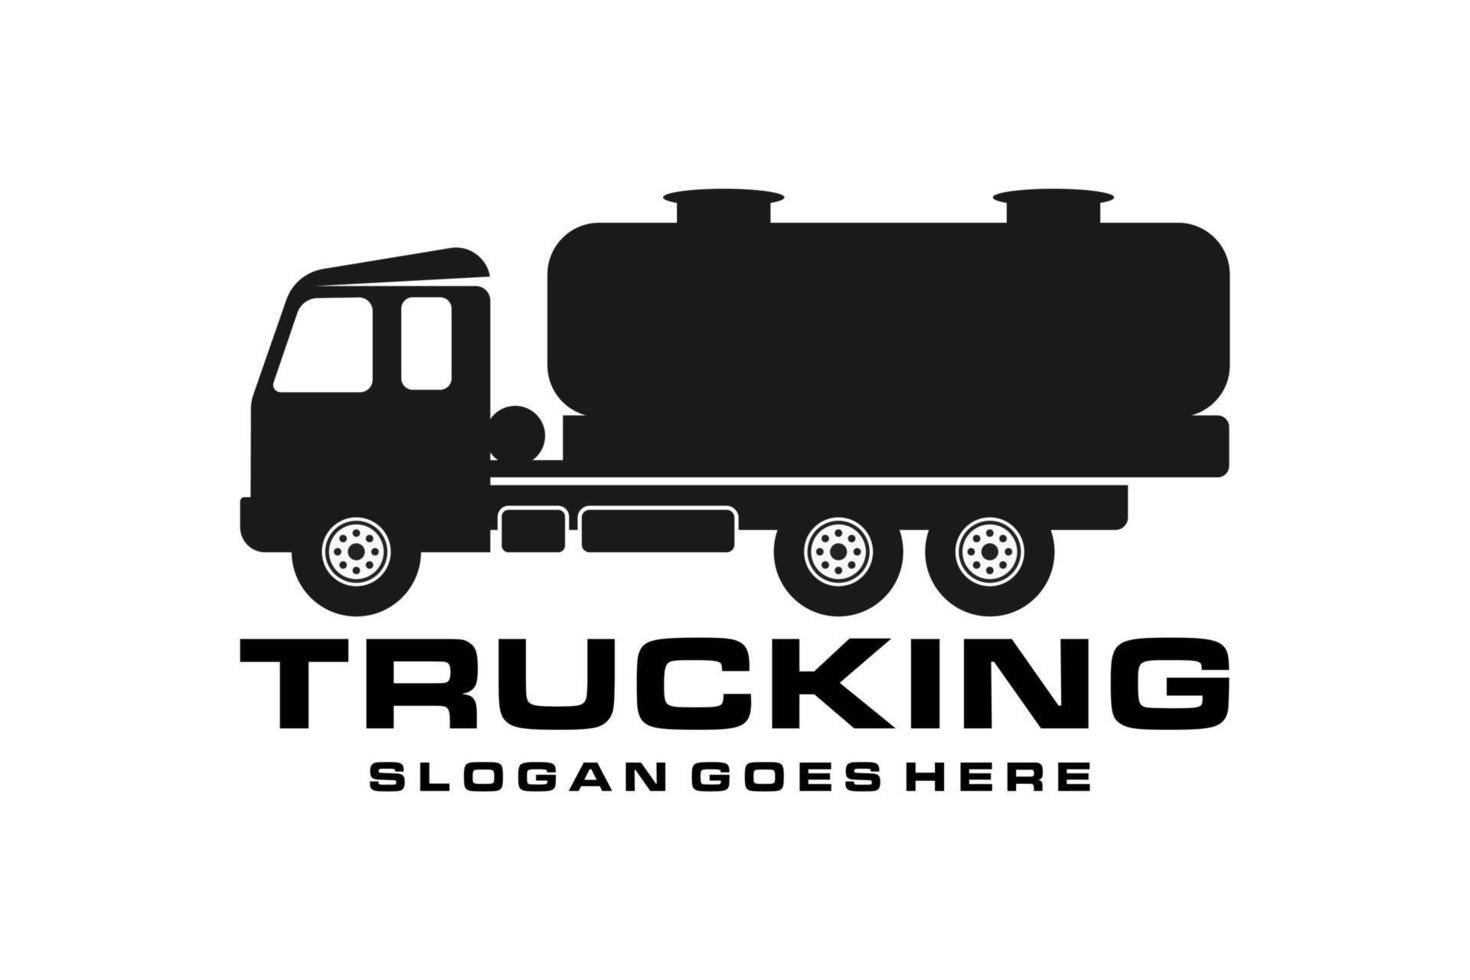 petrolero camión logo vector en emblema estilo, combustible tanque camión industrial vehículo pesado equipo silueta ilustración